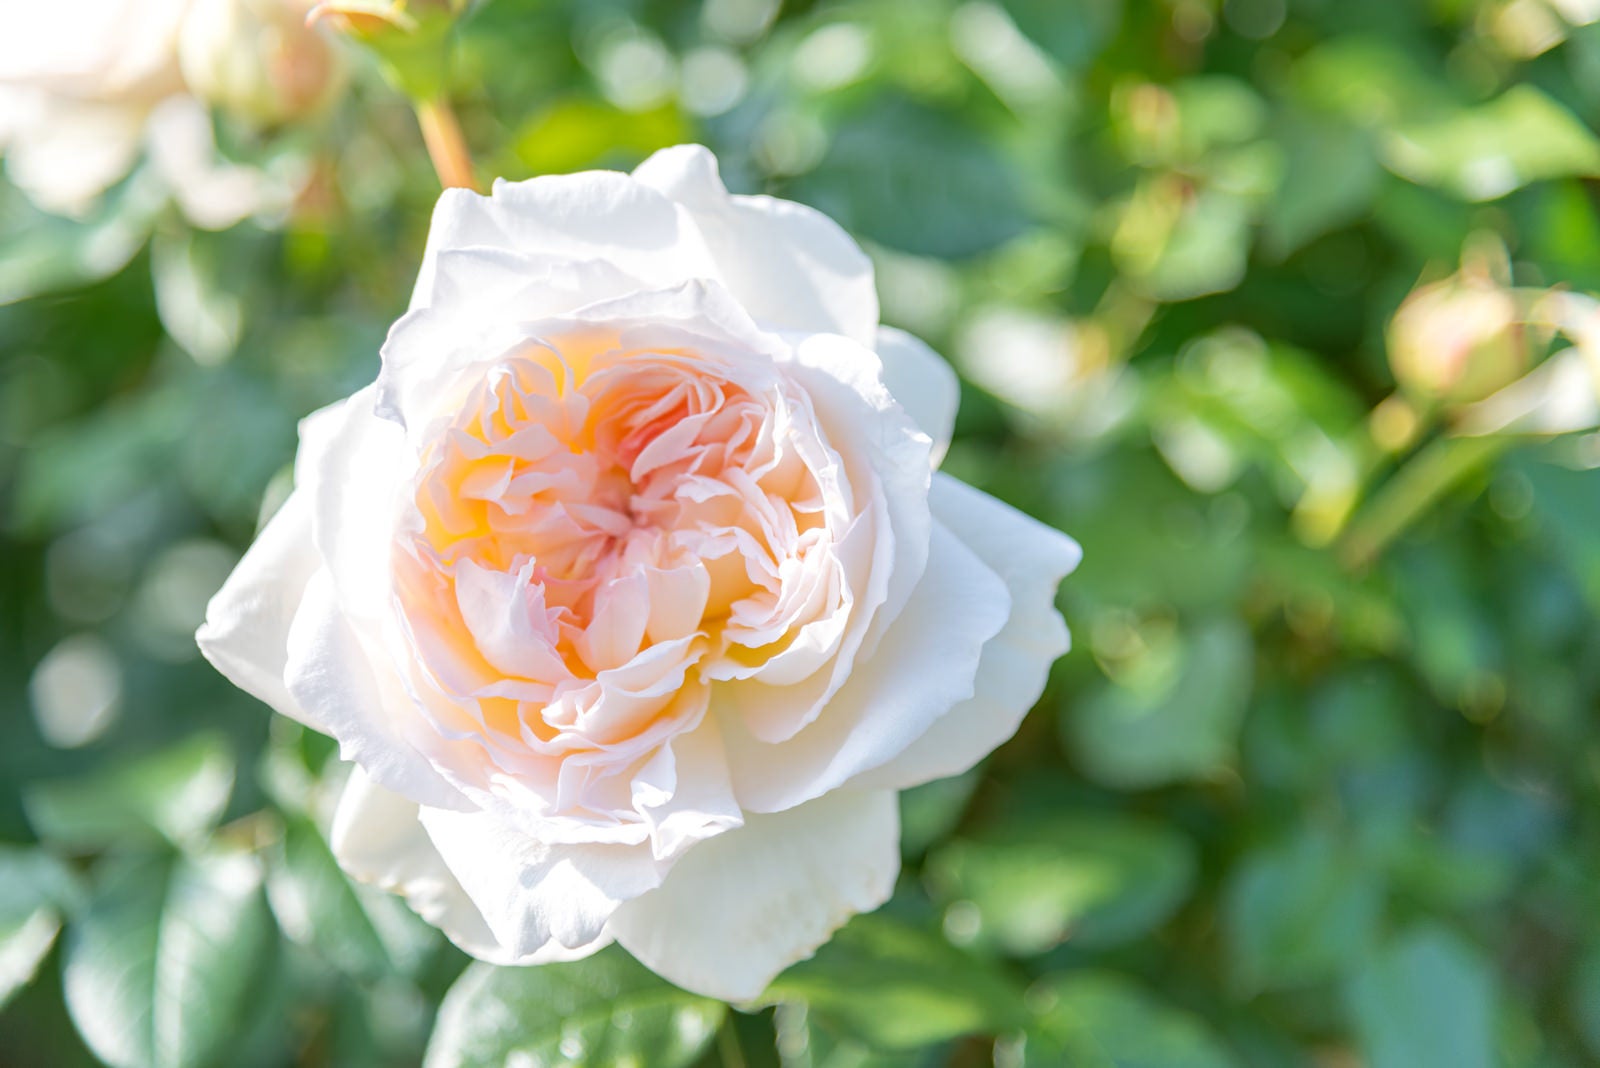 「甘い香りのするバラの花」の写真